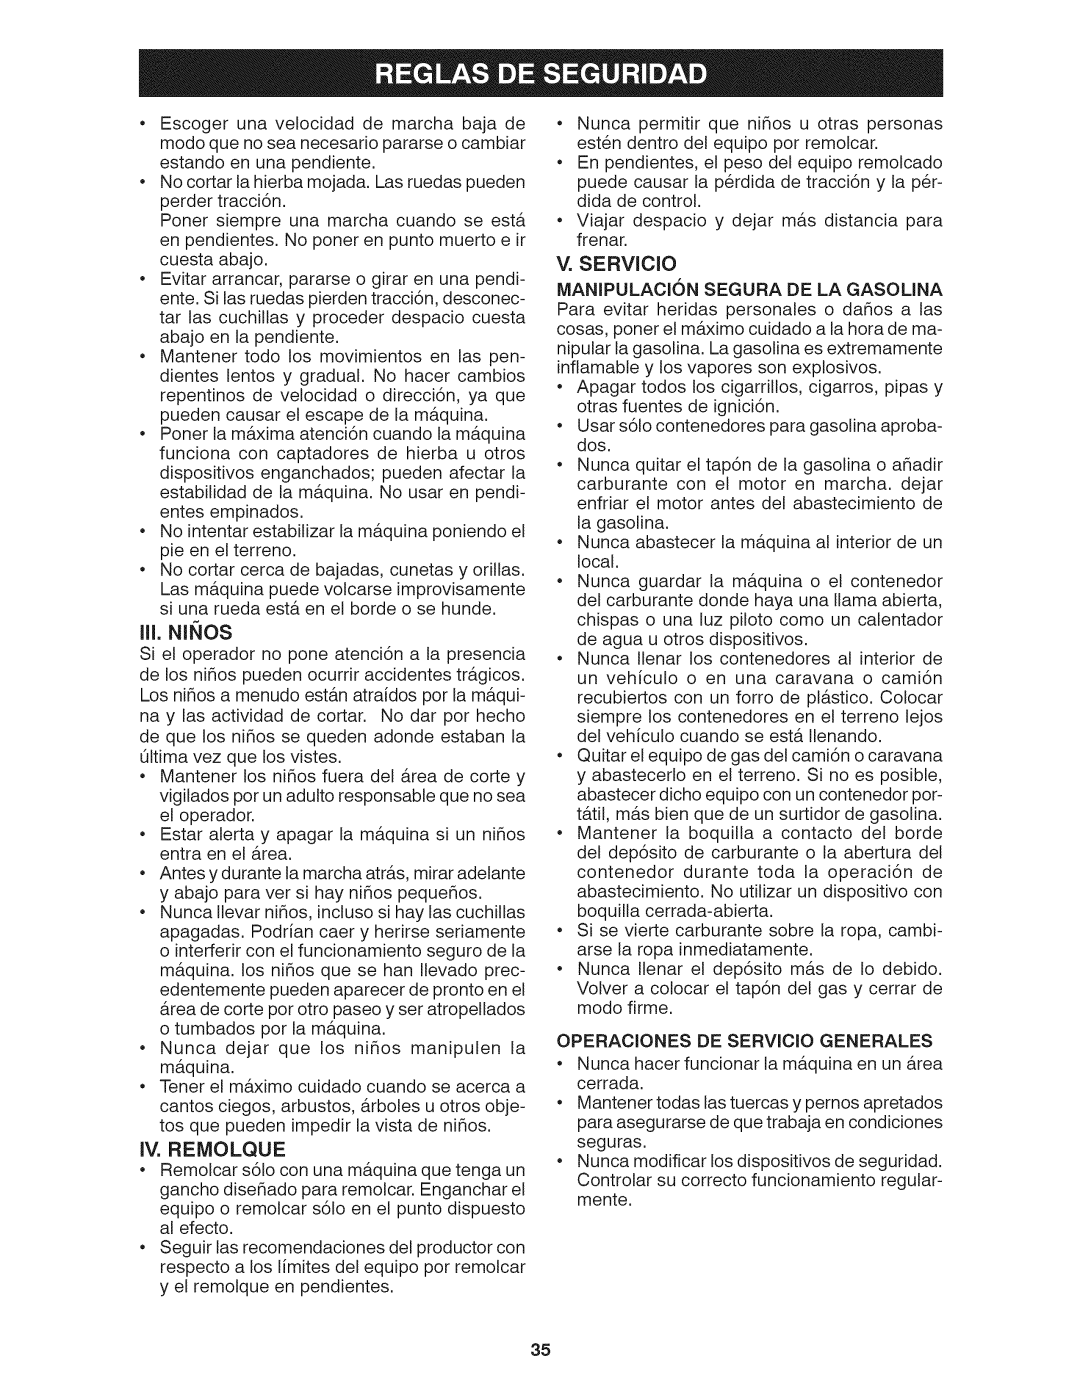 Craftsman 917.28035 owner manual Iii, Ninos, Iv. Remolque, V.SERVlCIO, Operaciones De Servicio Generales 